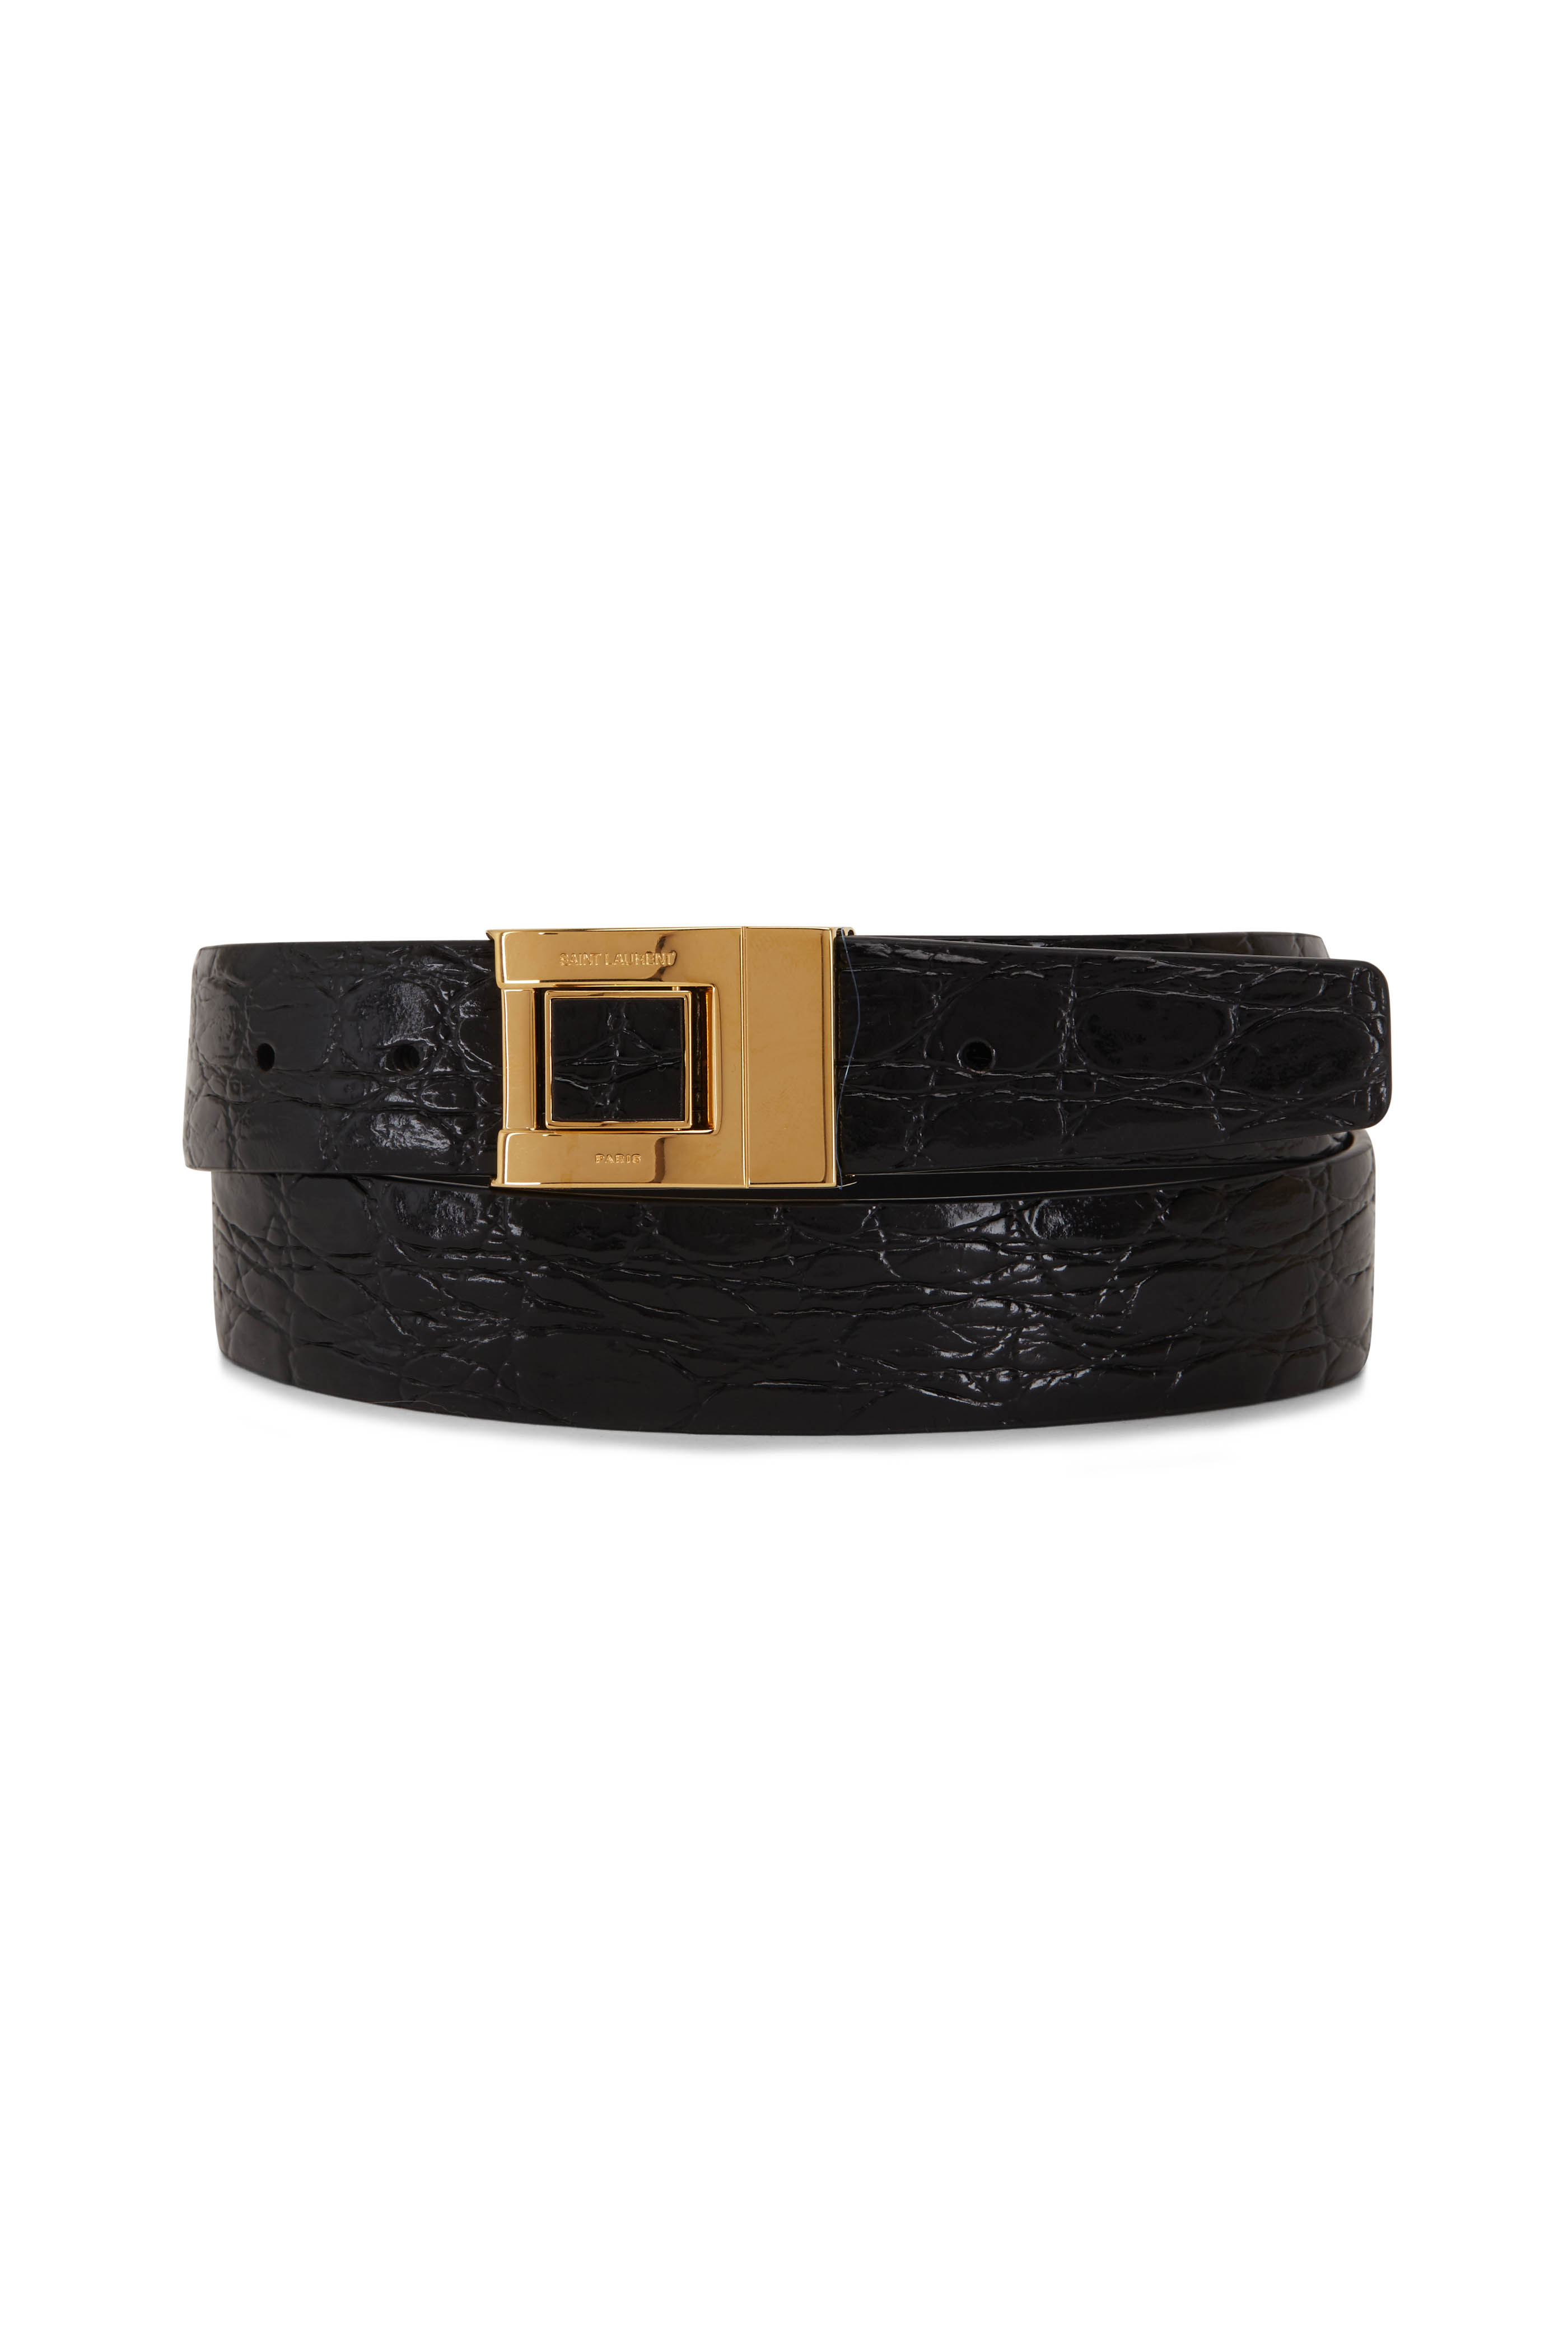 Saint Laurent pin-buckle leather belt - Black